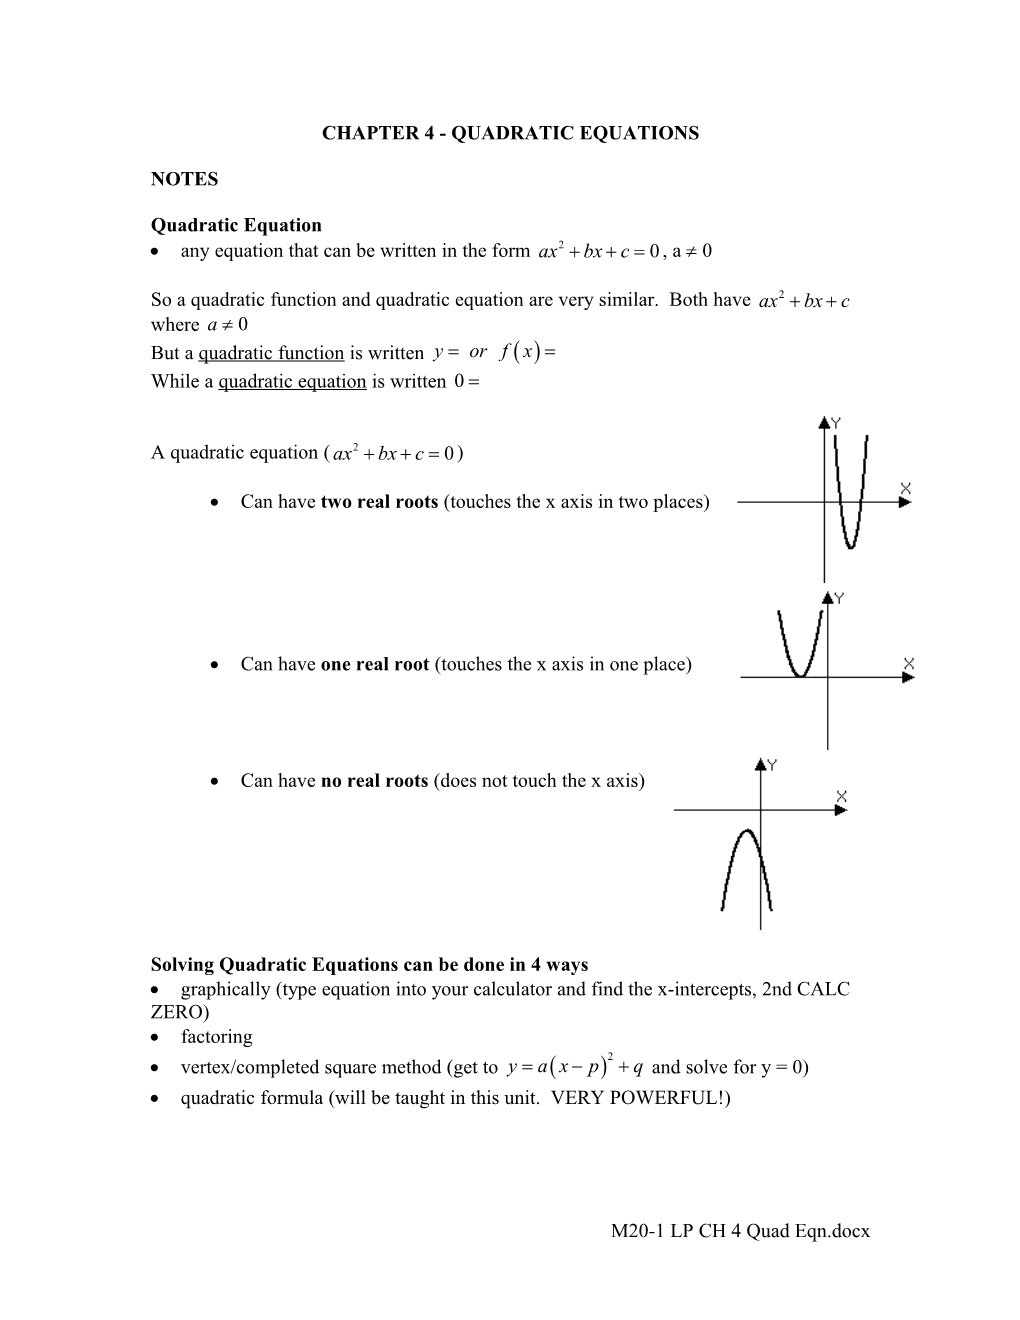 Chapter 4 - Quadratic Equations